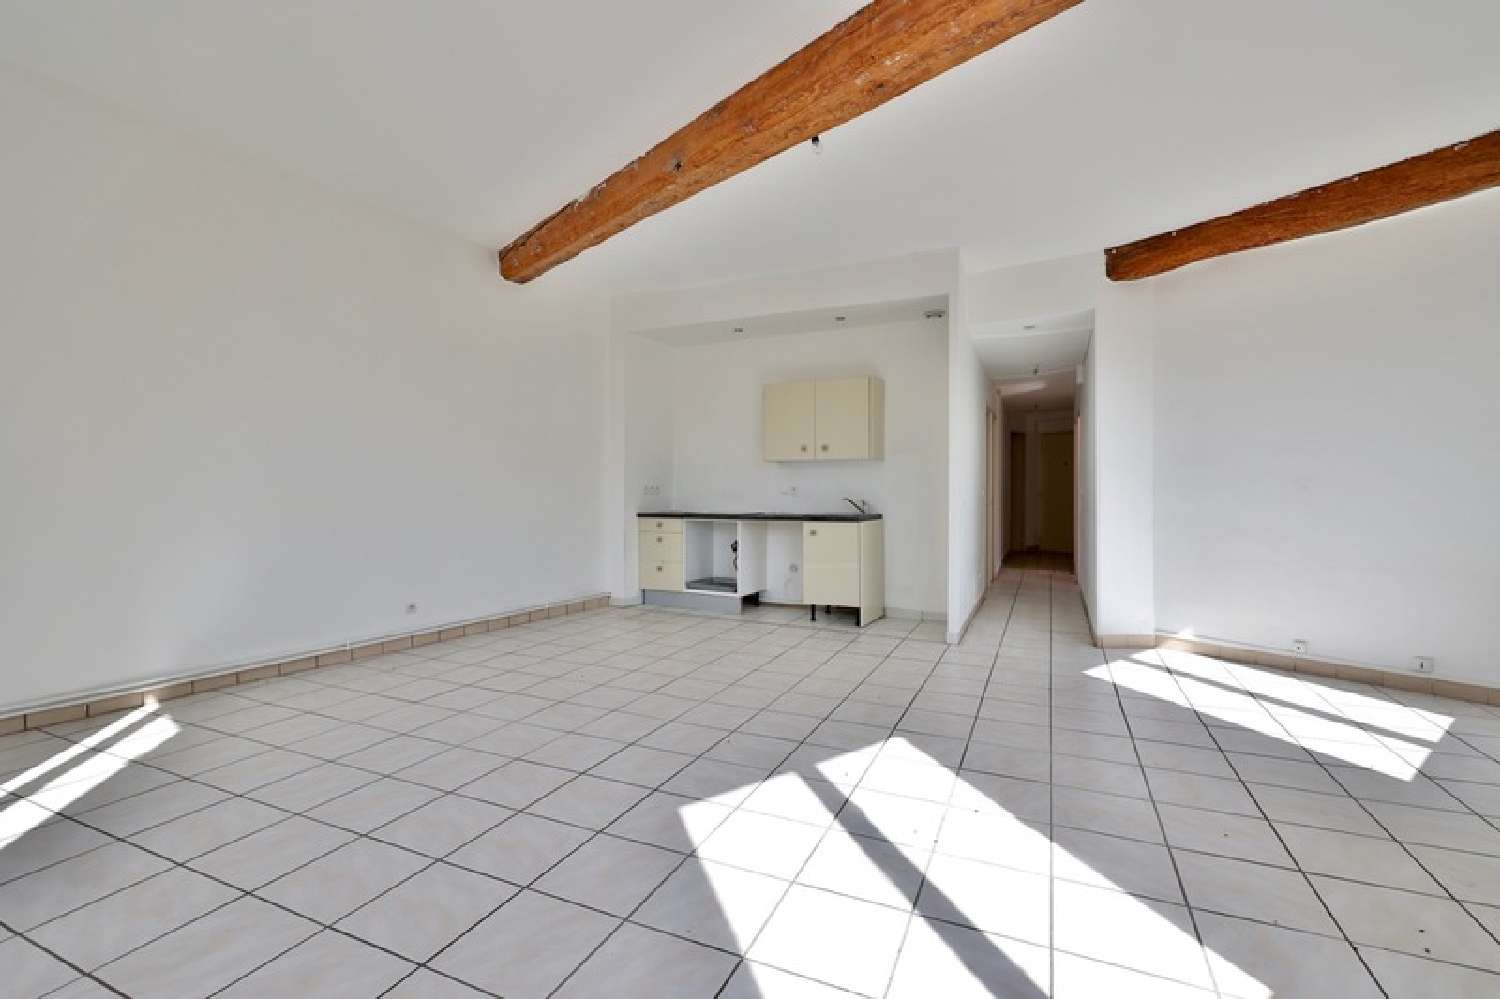  à vendre appartement Pontcharra-sur-Turdine Rhône 1